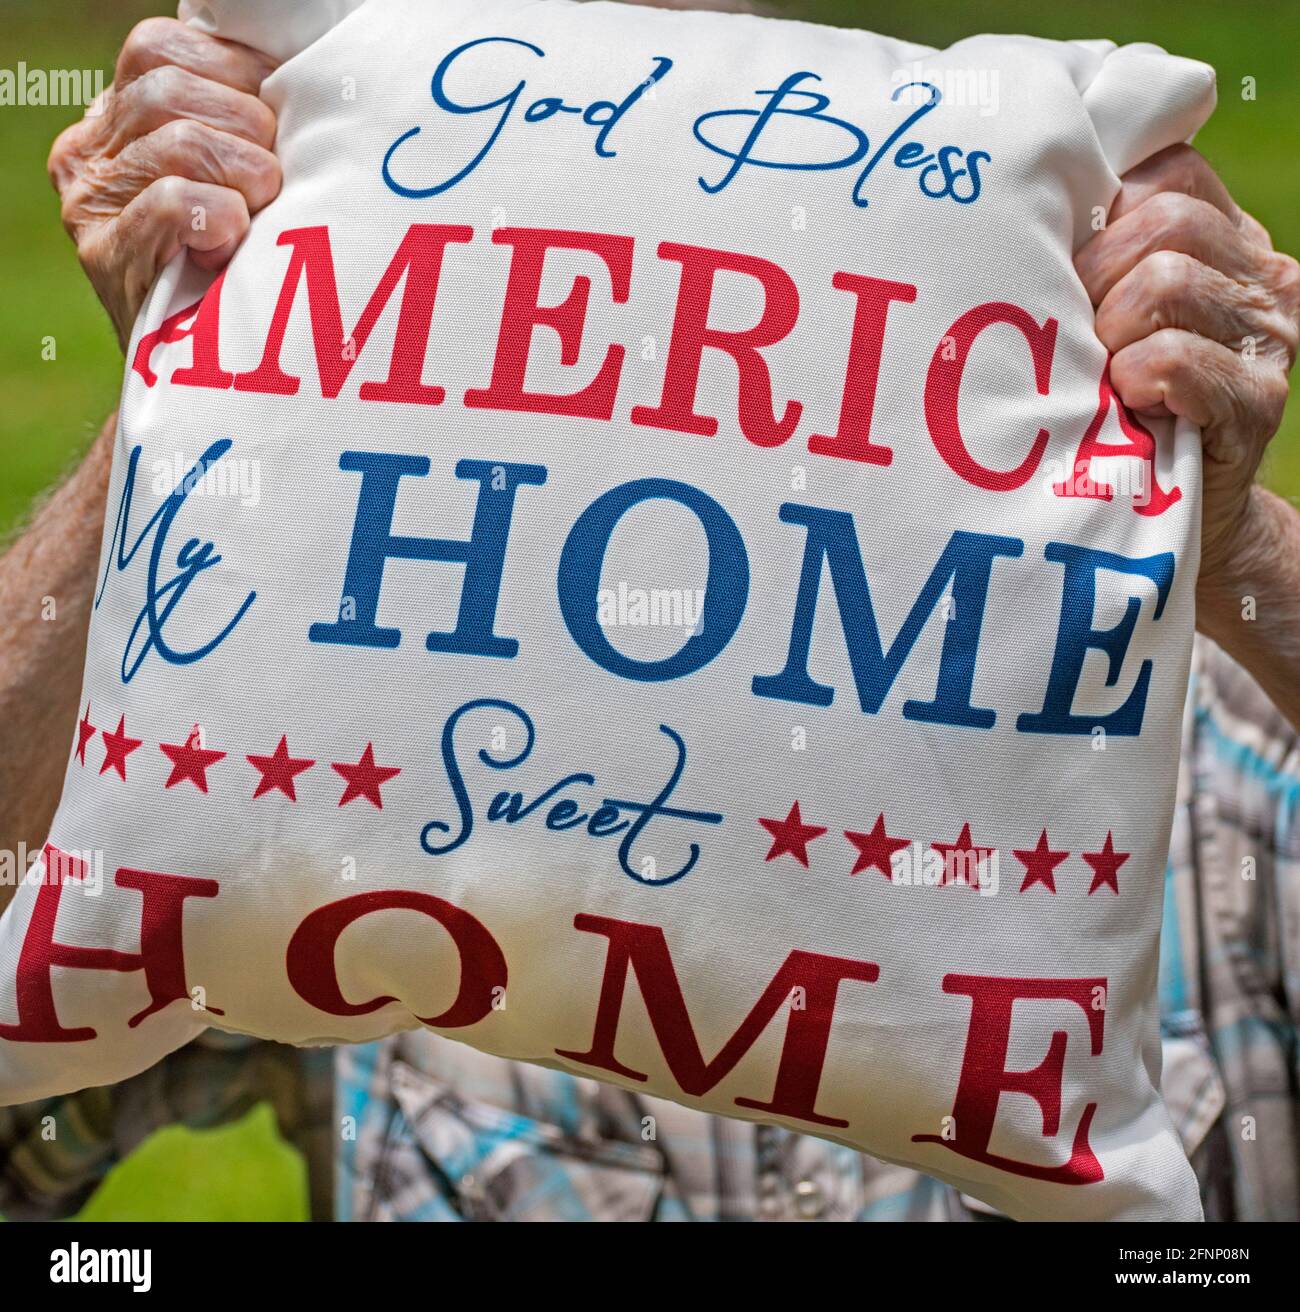 El hombre mayor tiene una almohada patriótica que Dios bendiga a América en honor al Día de la Independencia de los Estados Unidos. Foto de stock